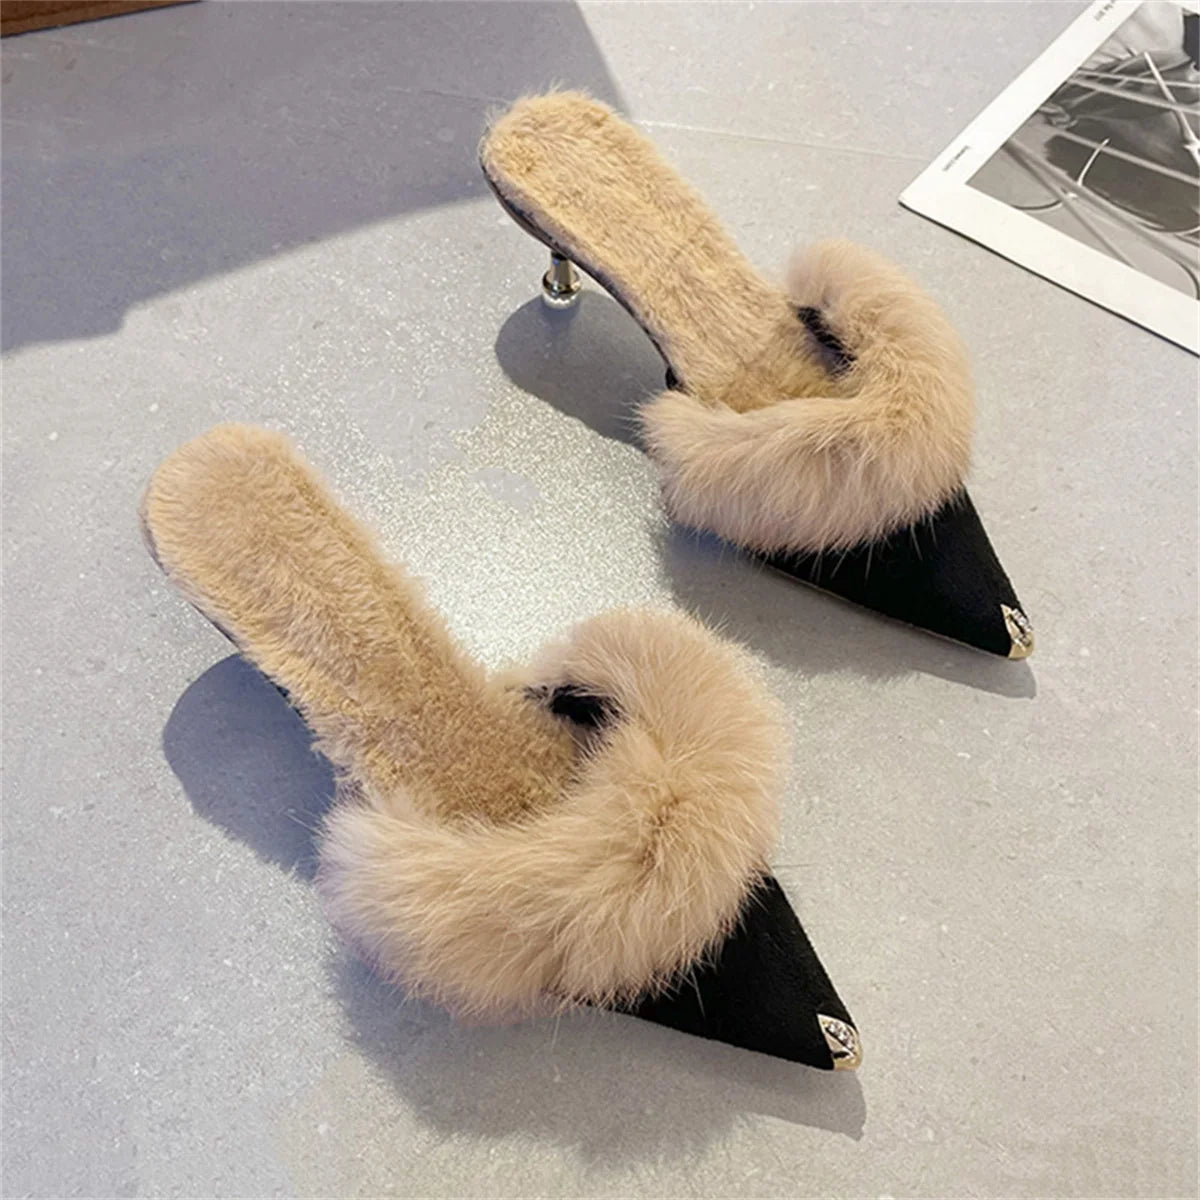 Gold Tip Fur Lined Sandals - Kelly Obi New York